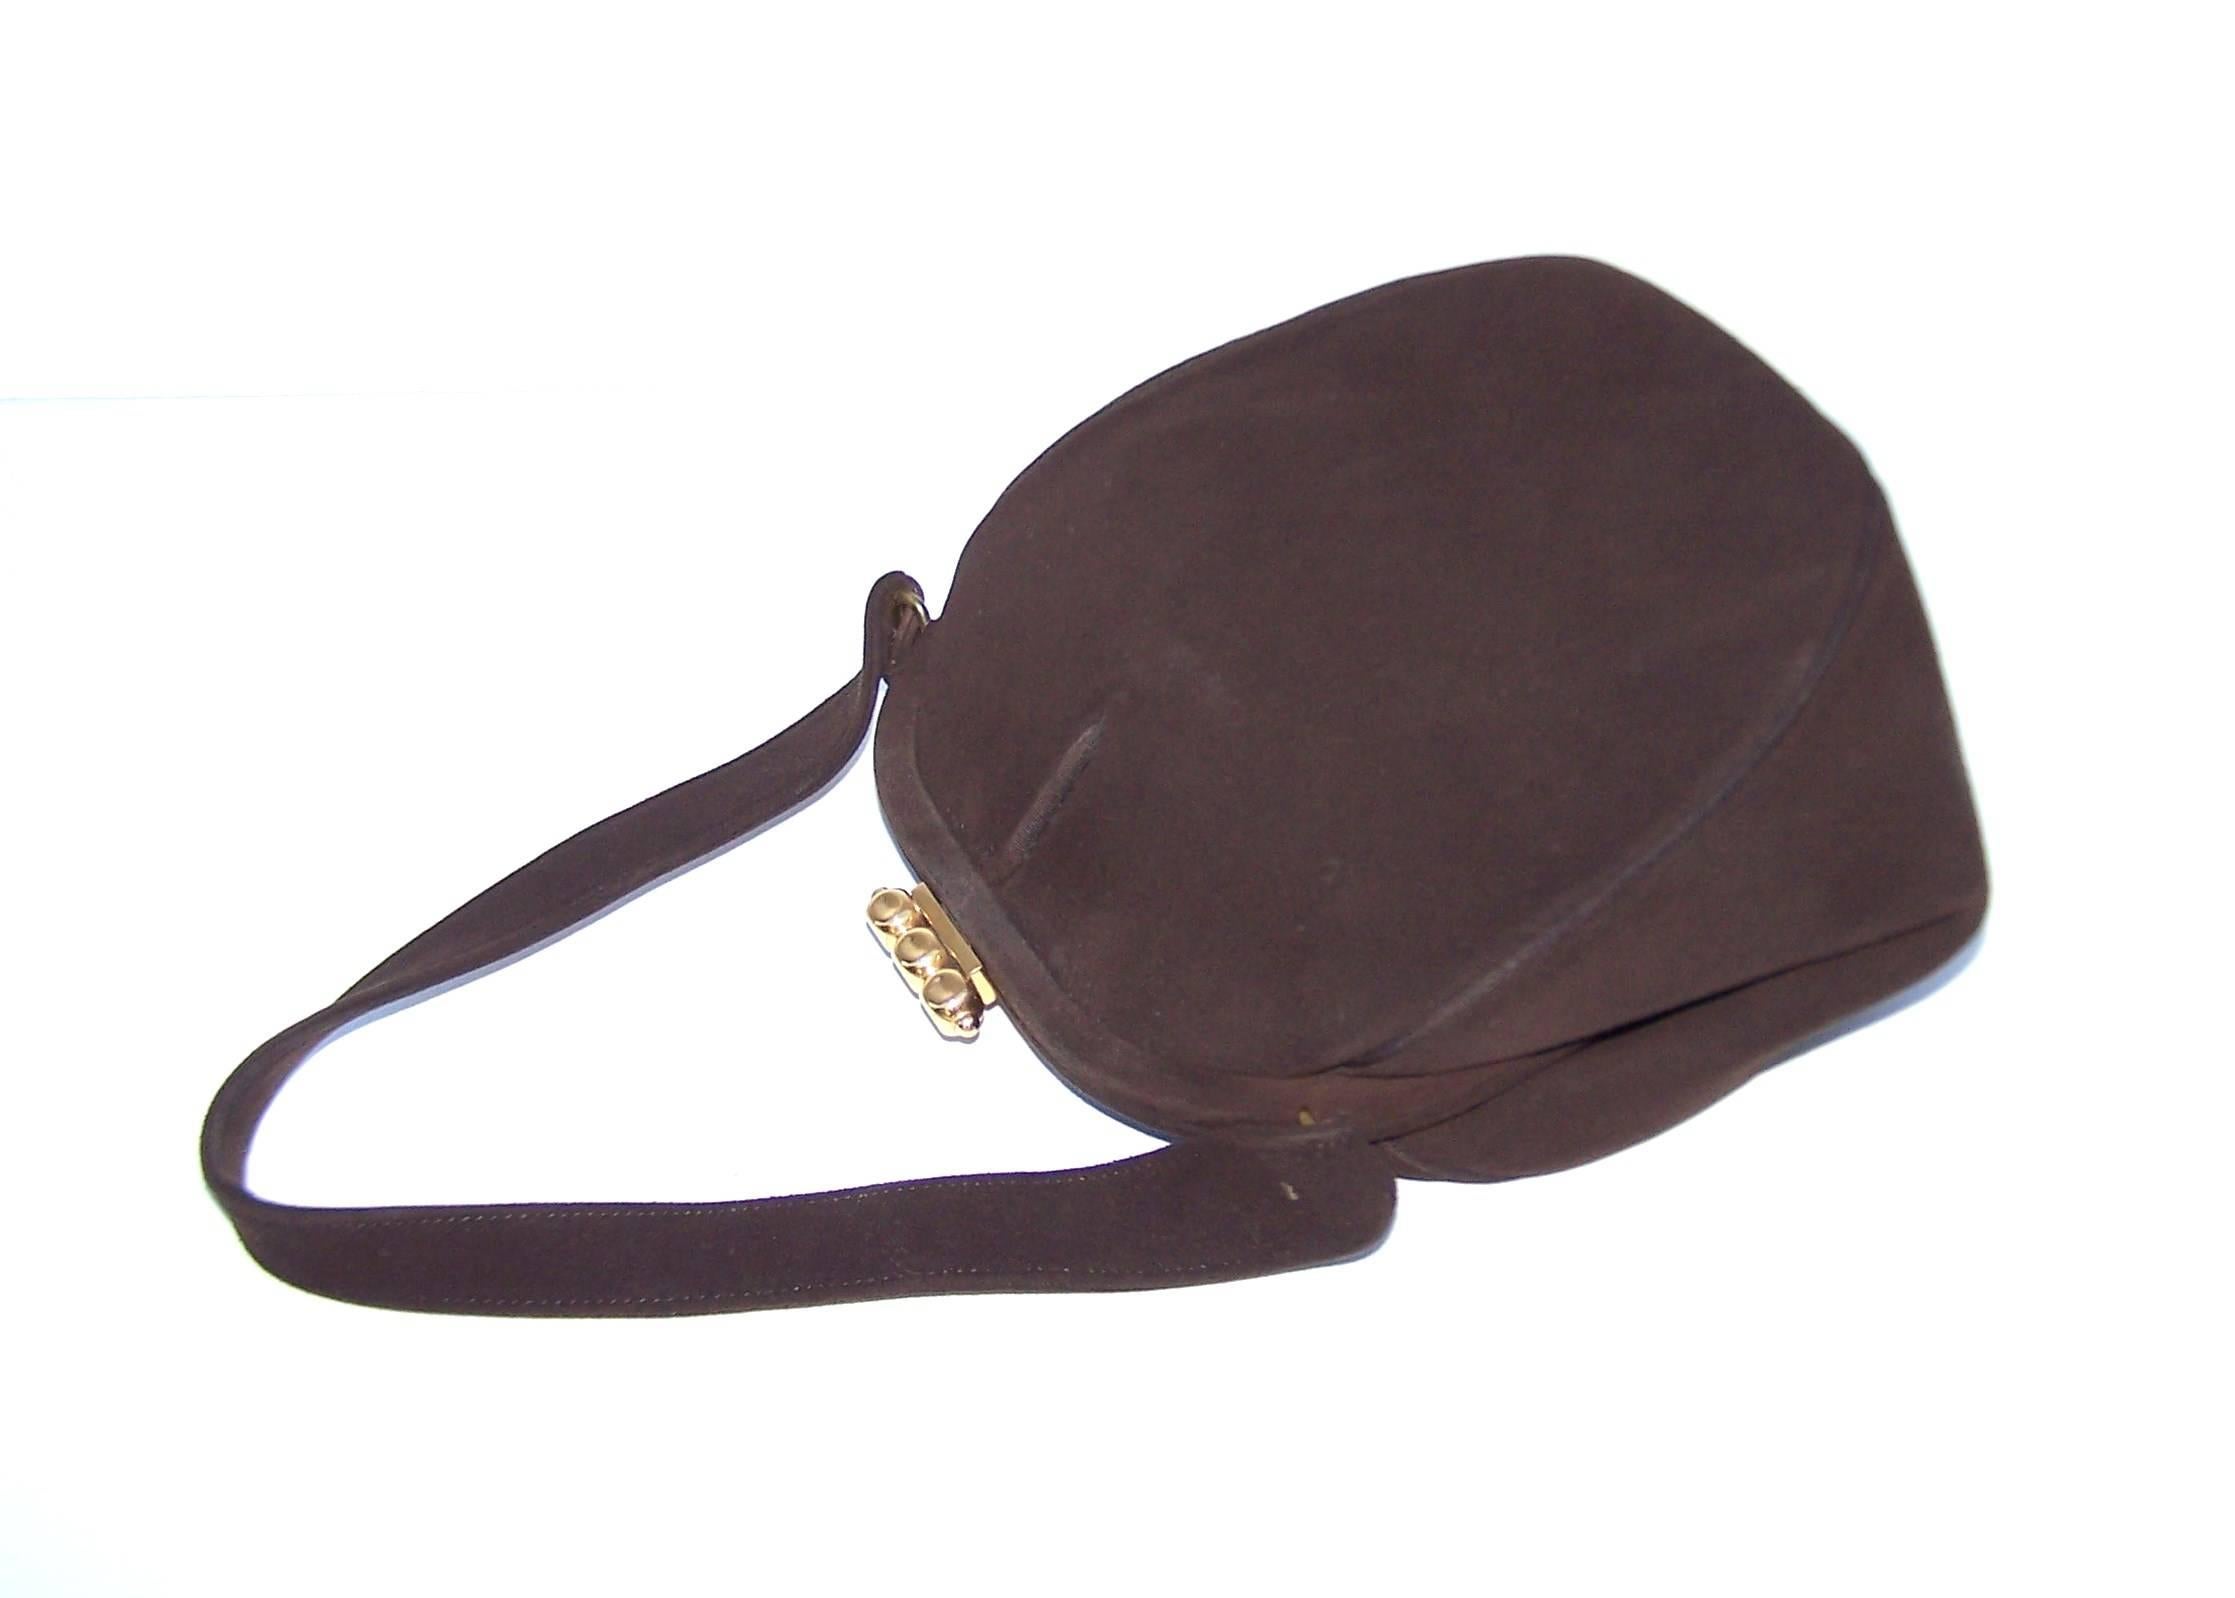 Black C.1950 Dorian Brown Suede Handbag With Unique Gold Tone Tab Closure